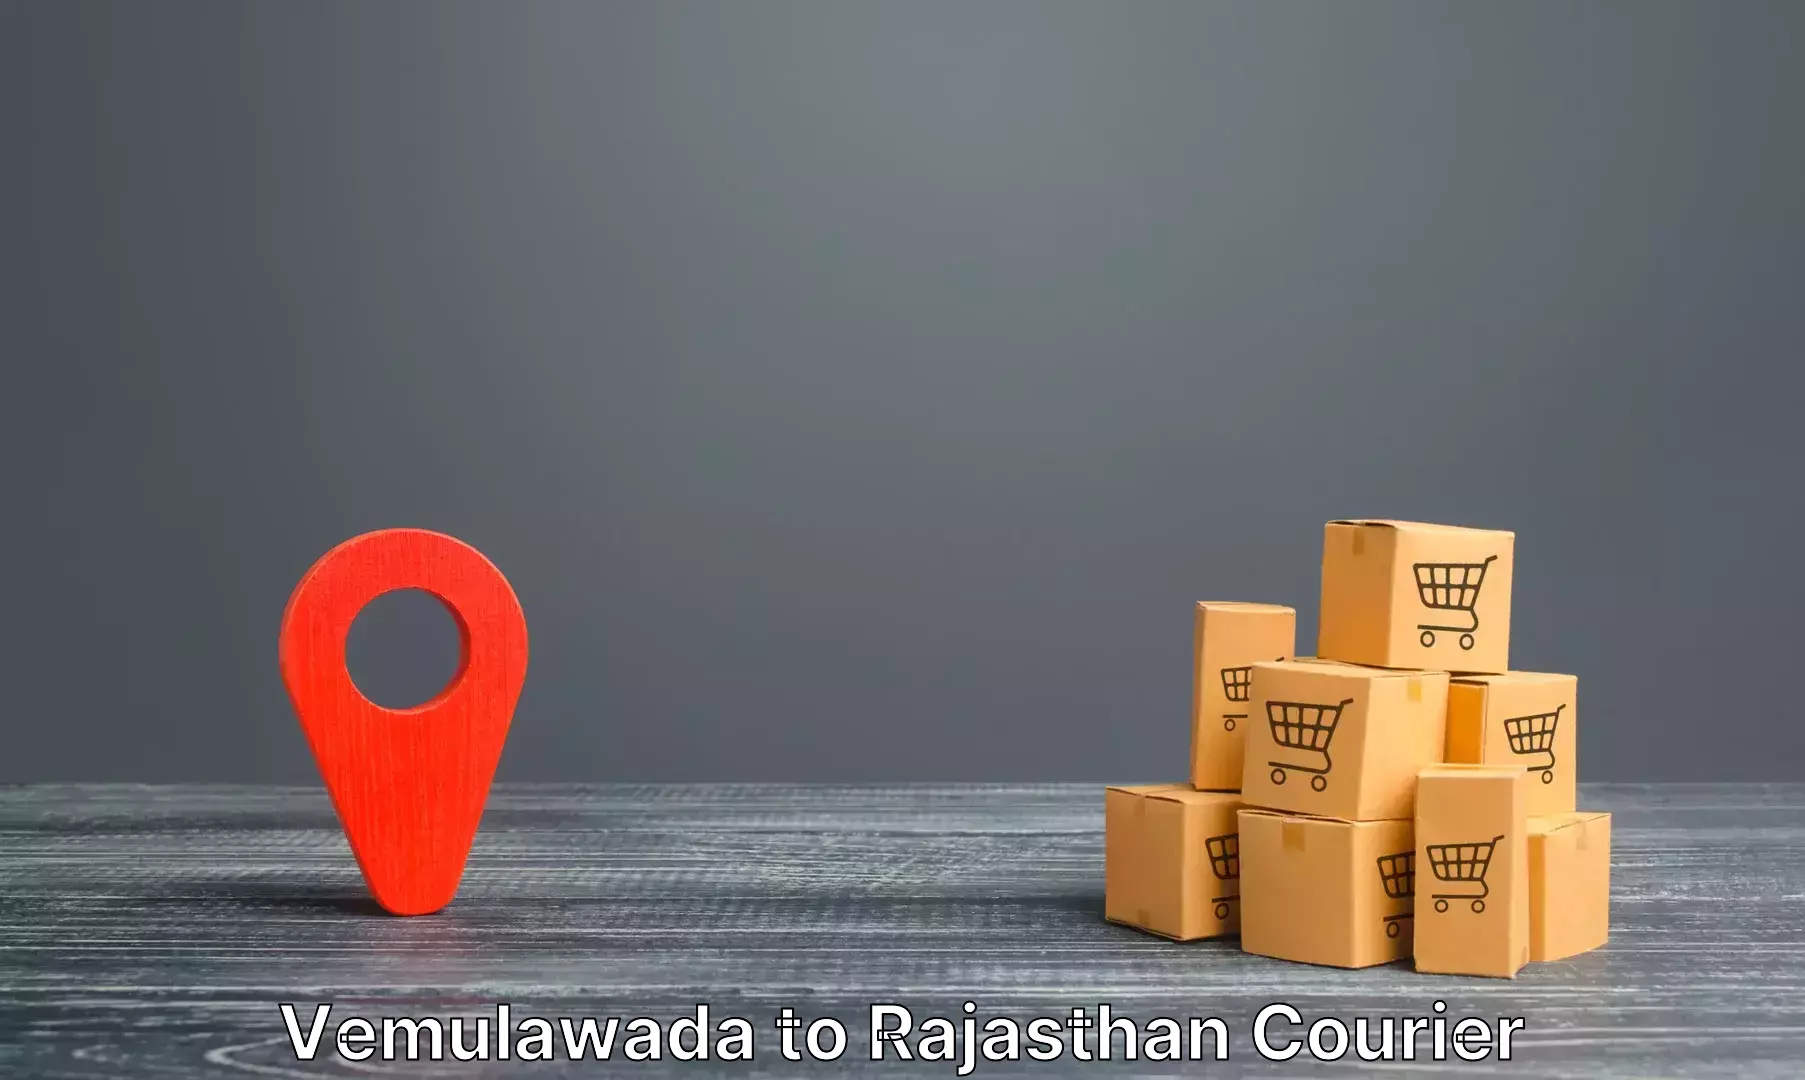 Baggage shipping experts Vemulawada to Nainwa